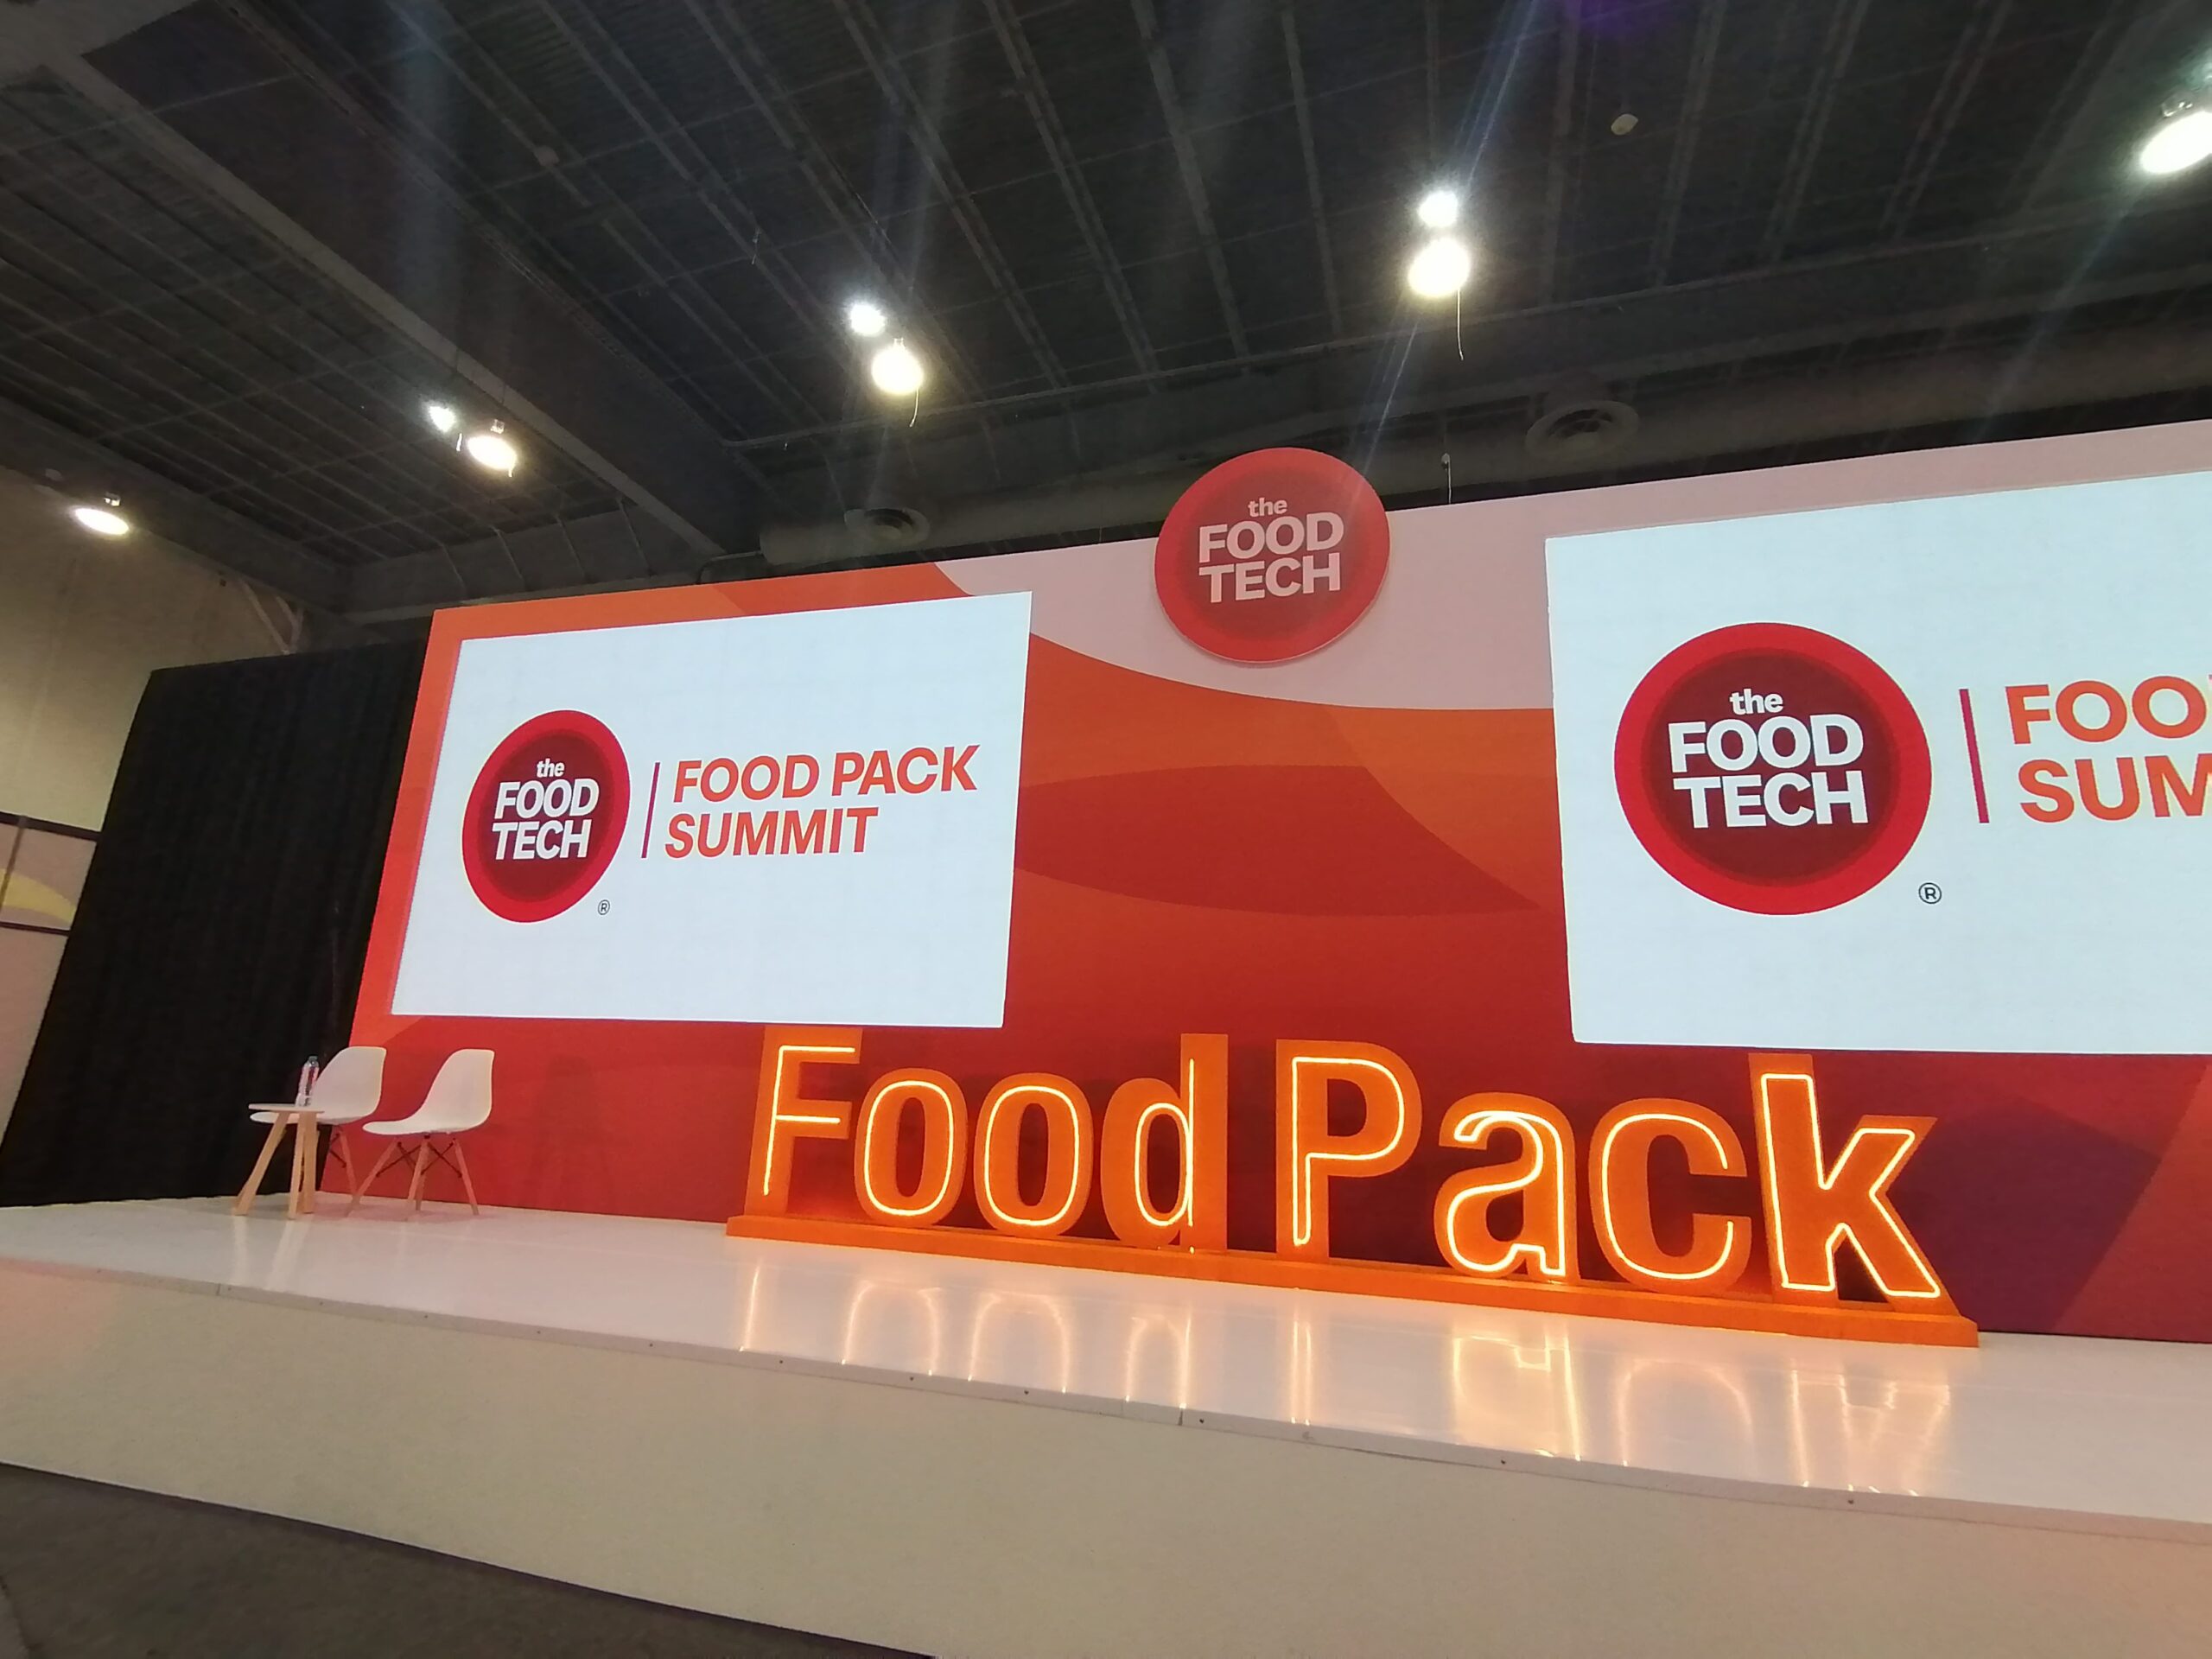 Food Pack Summit